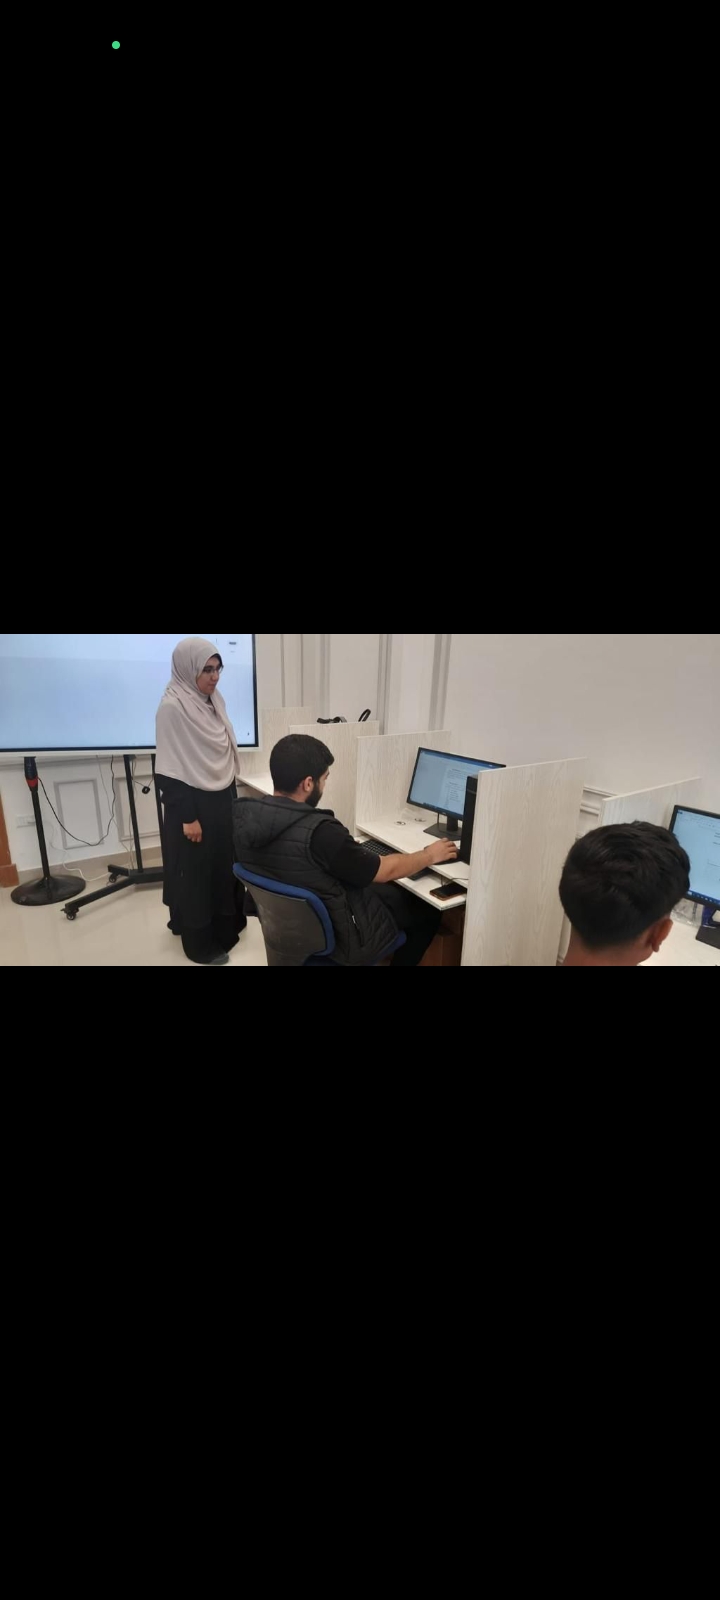 انتظام الدراسة بكامل طاقة معامل الحاسب الآلي بجامعة القاهرة الدولية